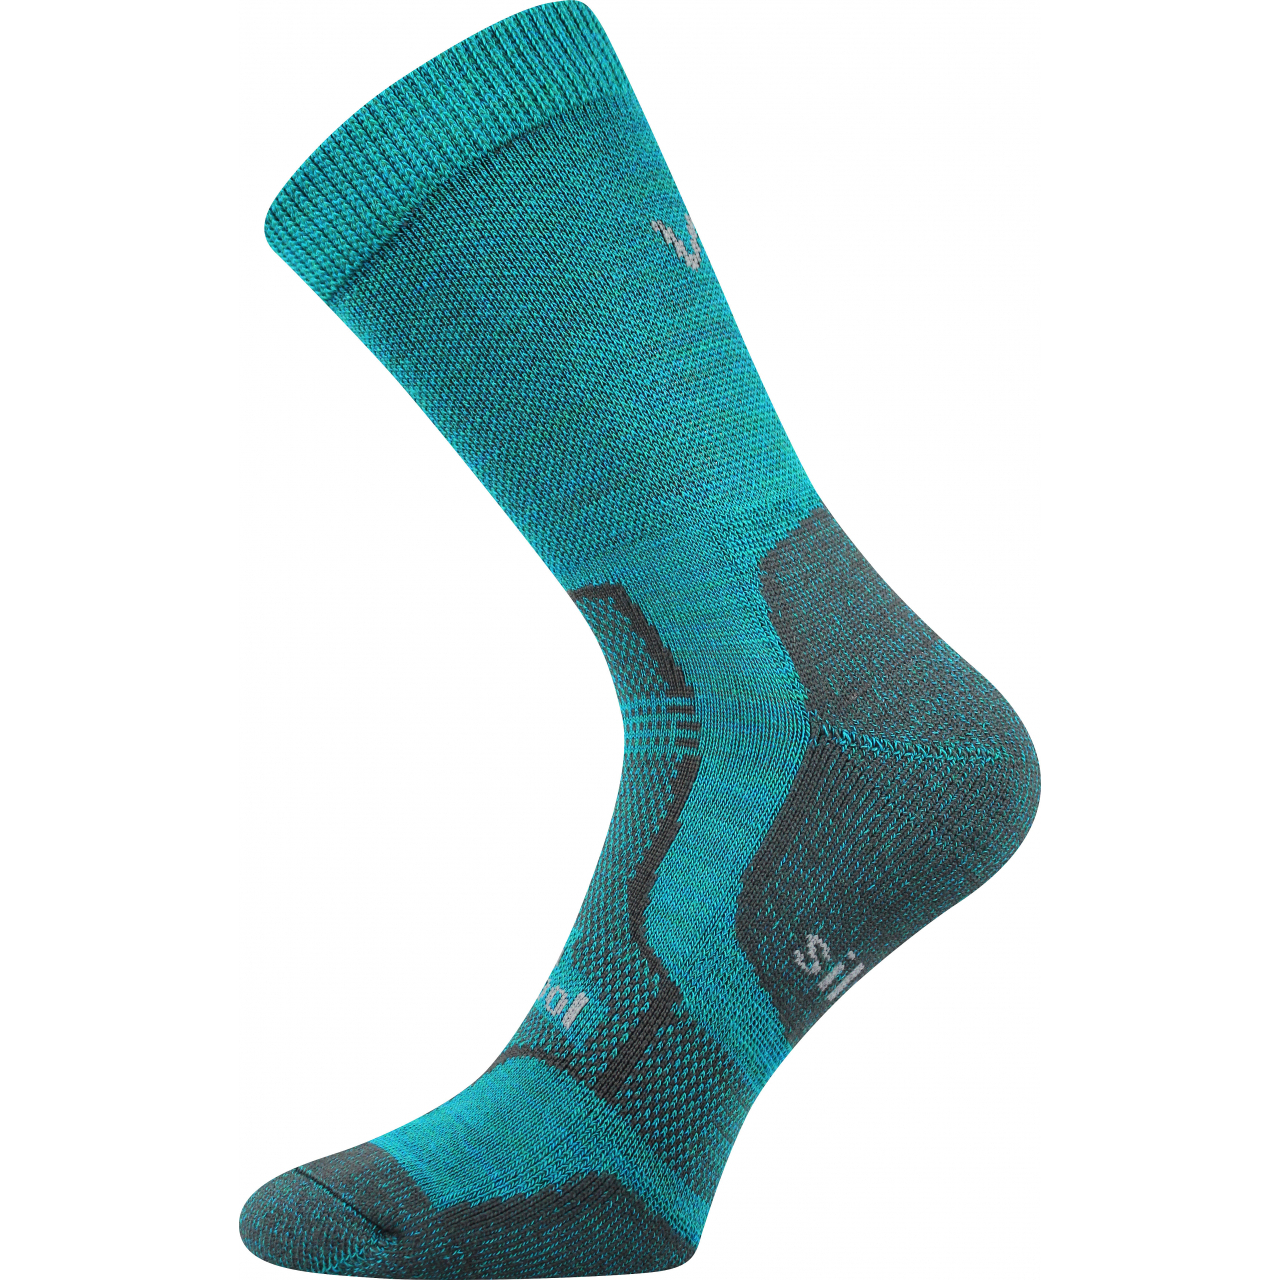 Ponožky zimní unisex Voxx Granit - tyrkysové, 43-46